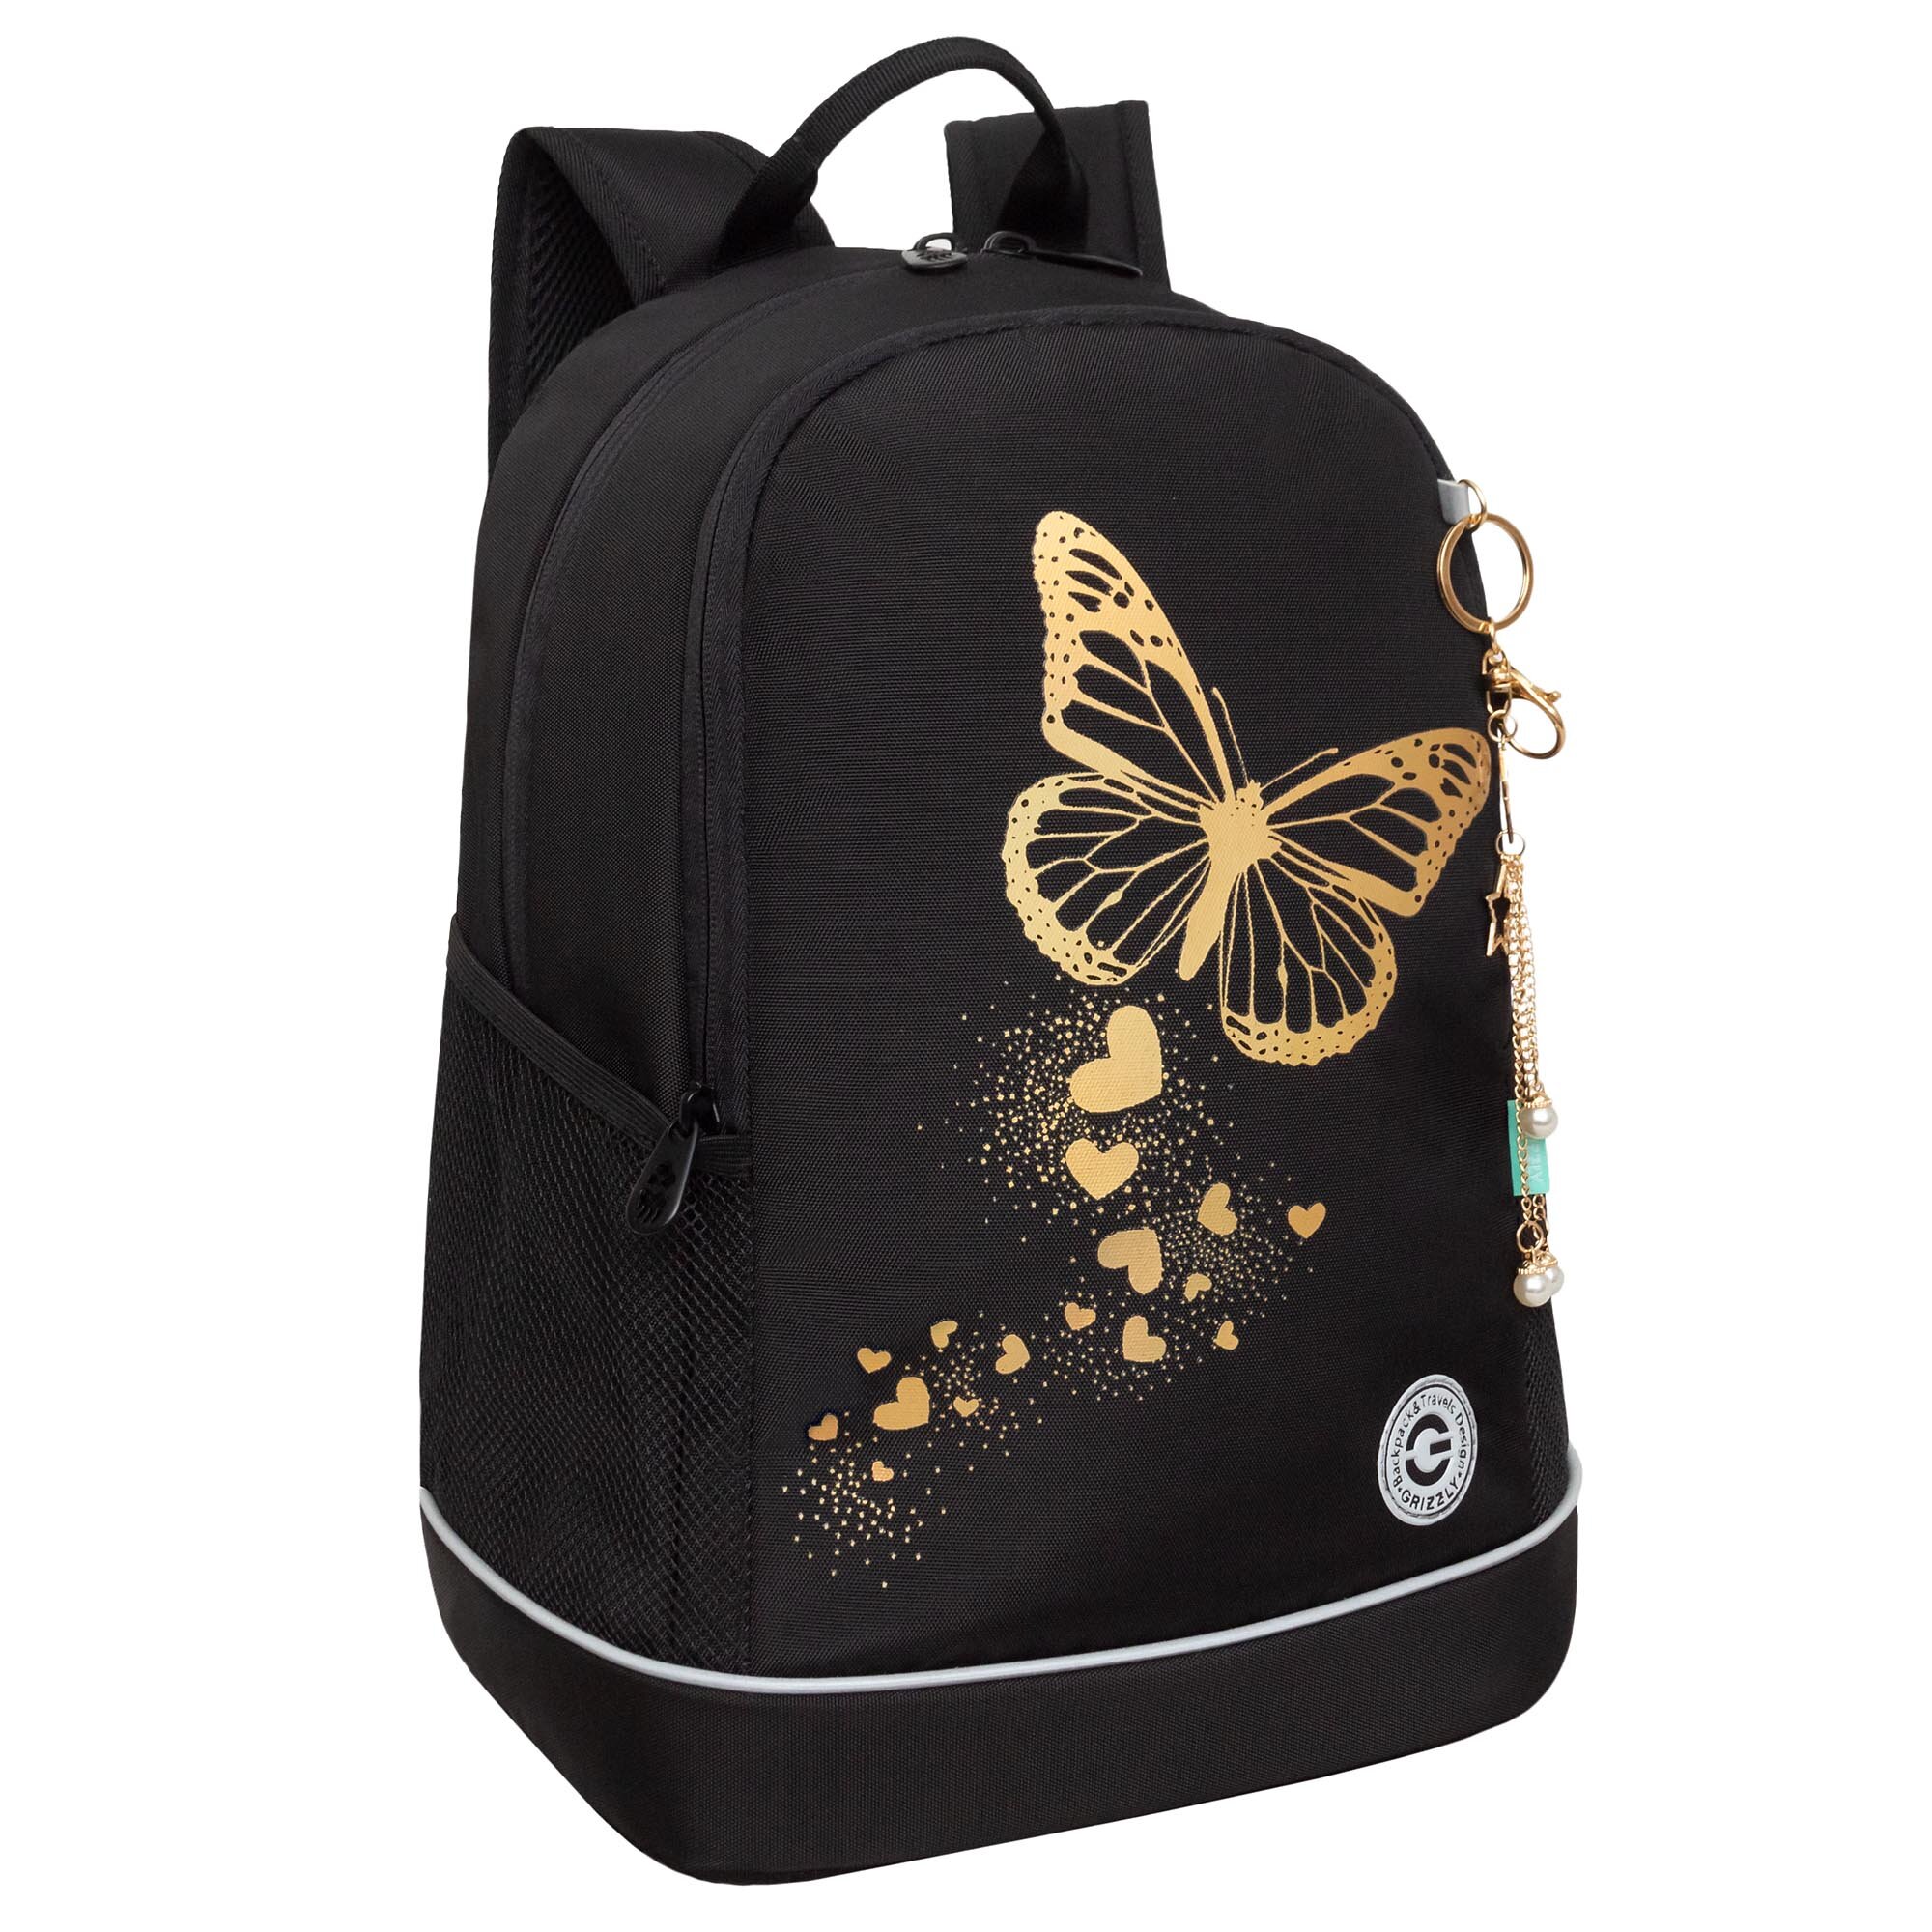 Рюкзак школьный GRIZZLY с карманом для ноутбука 13", жесткой спинкой, двумя отделениями, для девочки RG-463-5/1